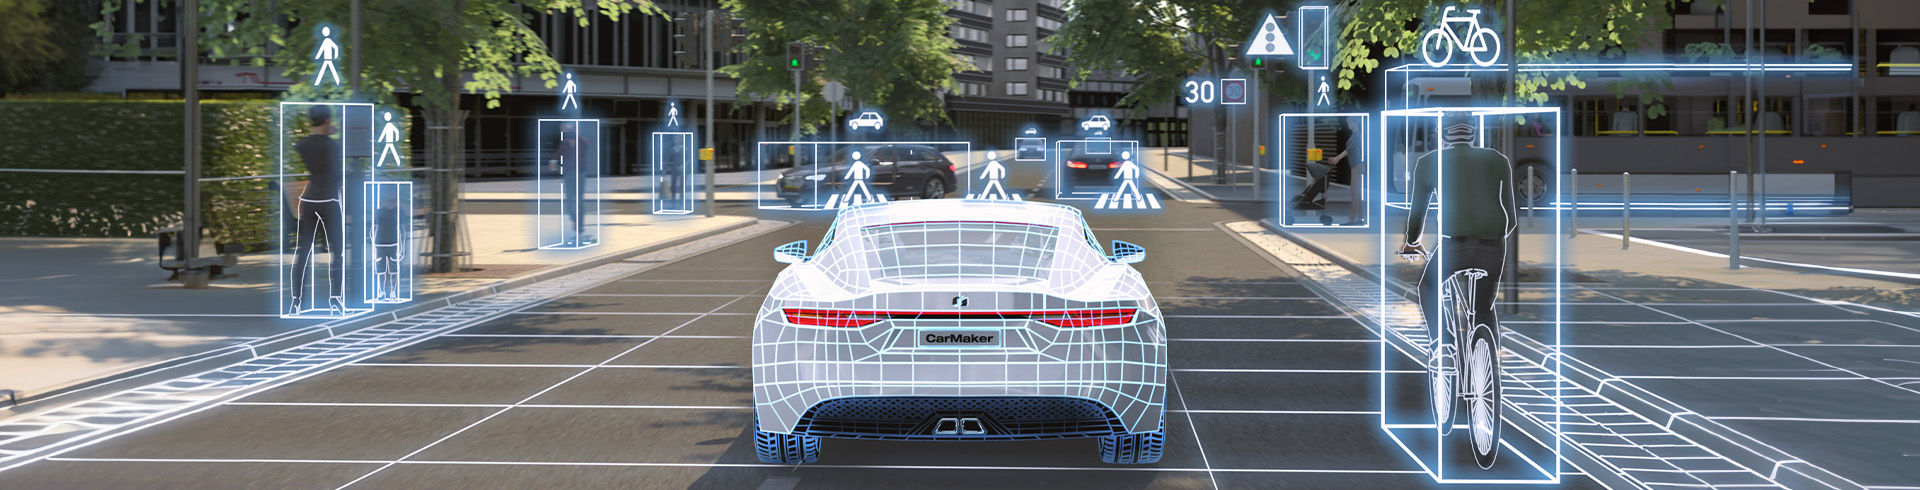 Autonomous Vehicles IPG Automotive